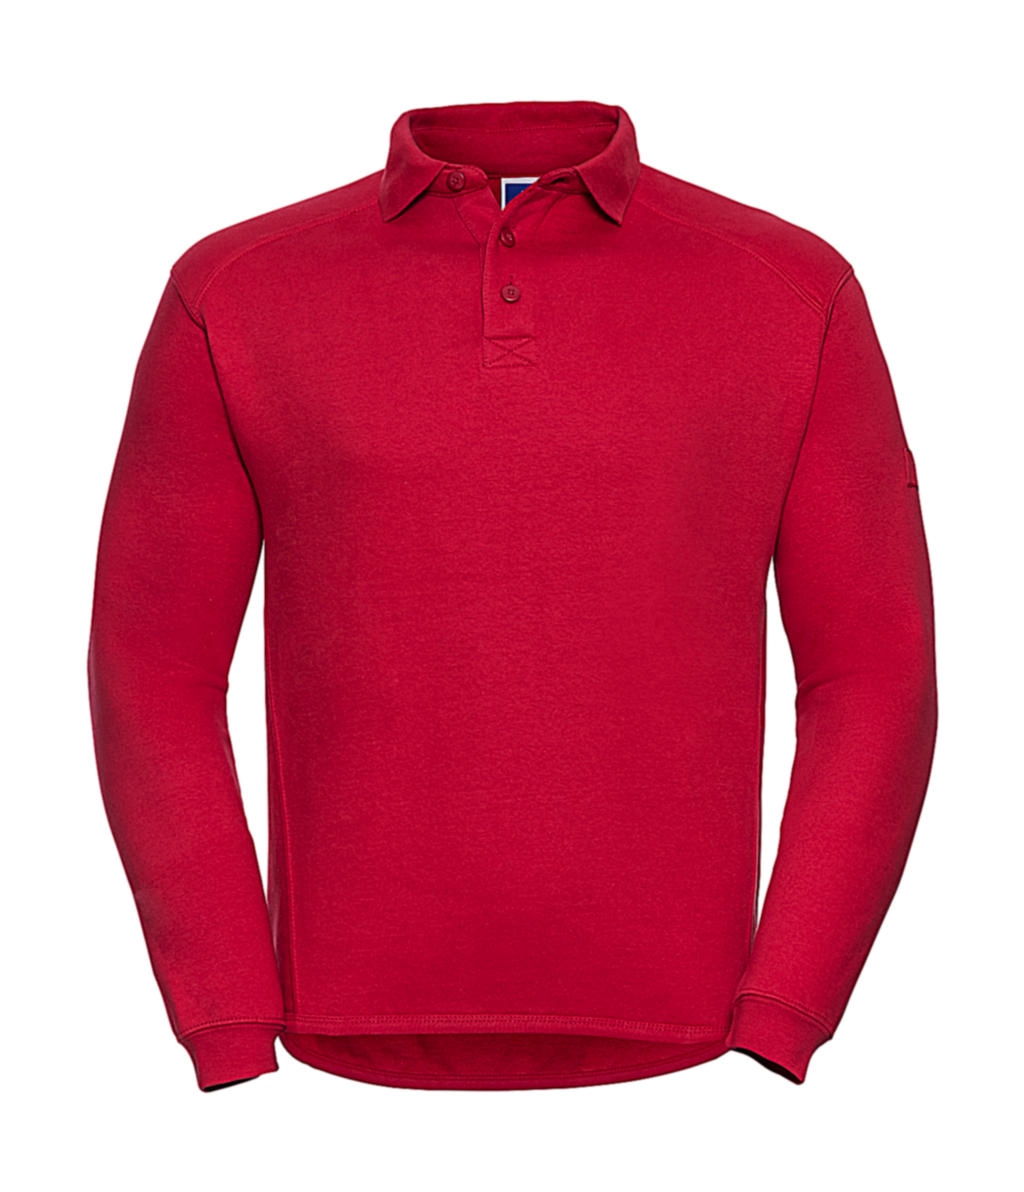 Heavy Duty Collar Sweatshirt zum Besticken und Bedrucken in der Farbe Classic Red mit Ihren Logo, Schriftzug oder Motiv.